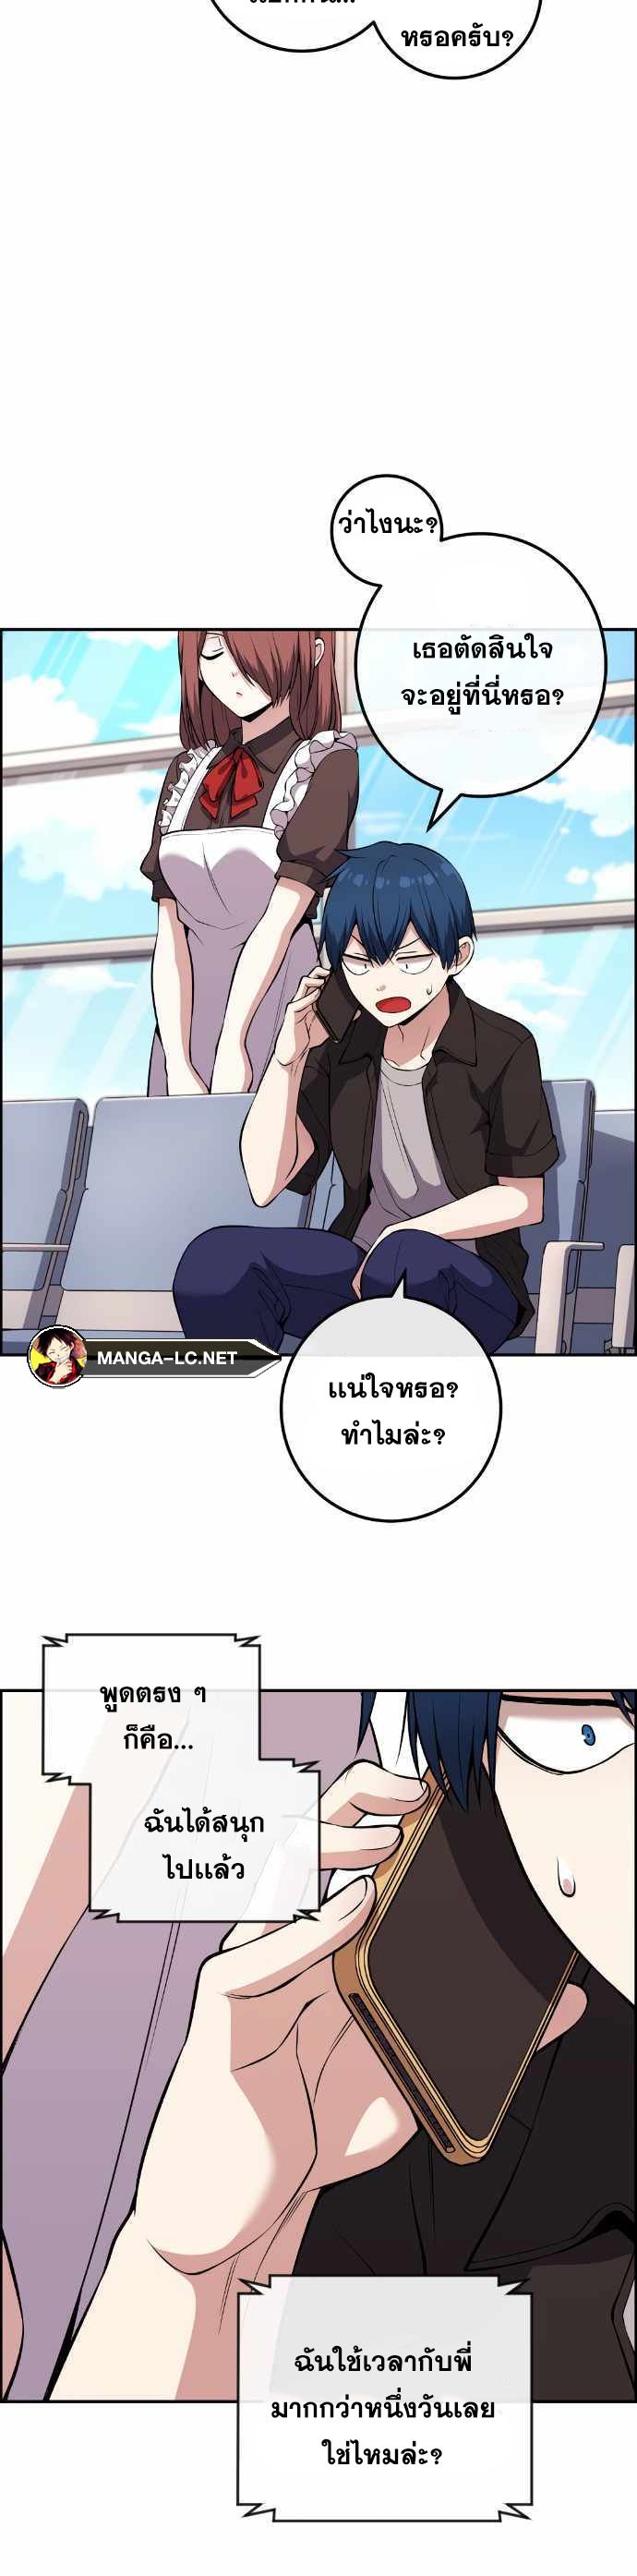 Webtoon Character Na Kang Lim ตอนที่ 122 (5)